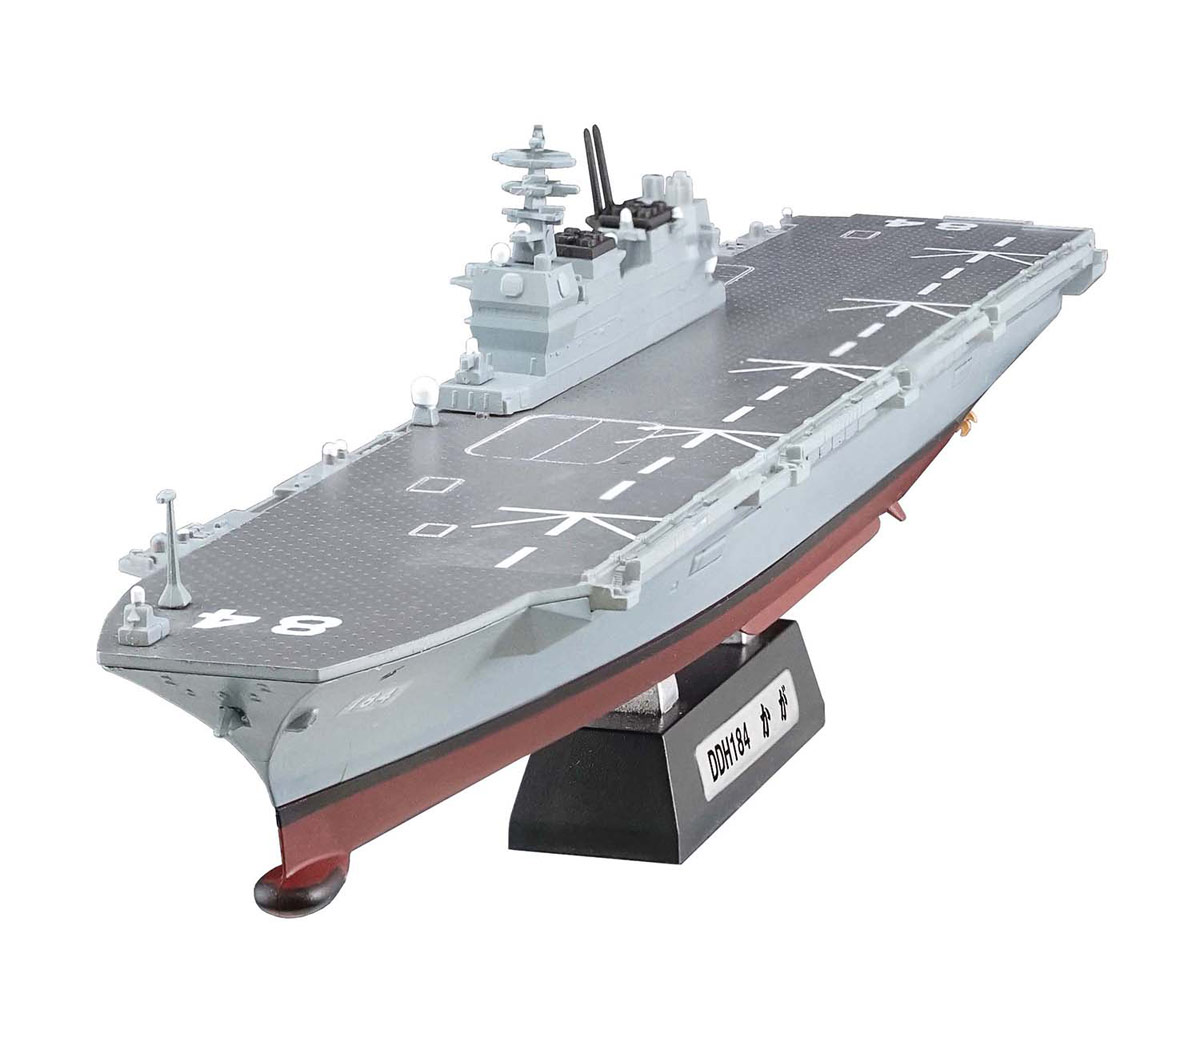 1/1250 現用艦船キットコレクション ハイスペック 海上自衛隊 いずも型護衛艦 - ウインドウを閉じる